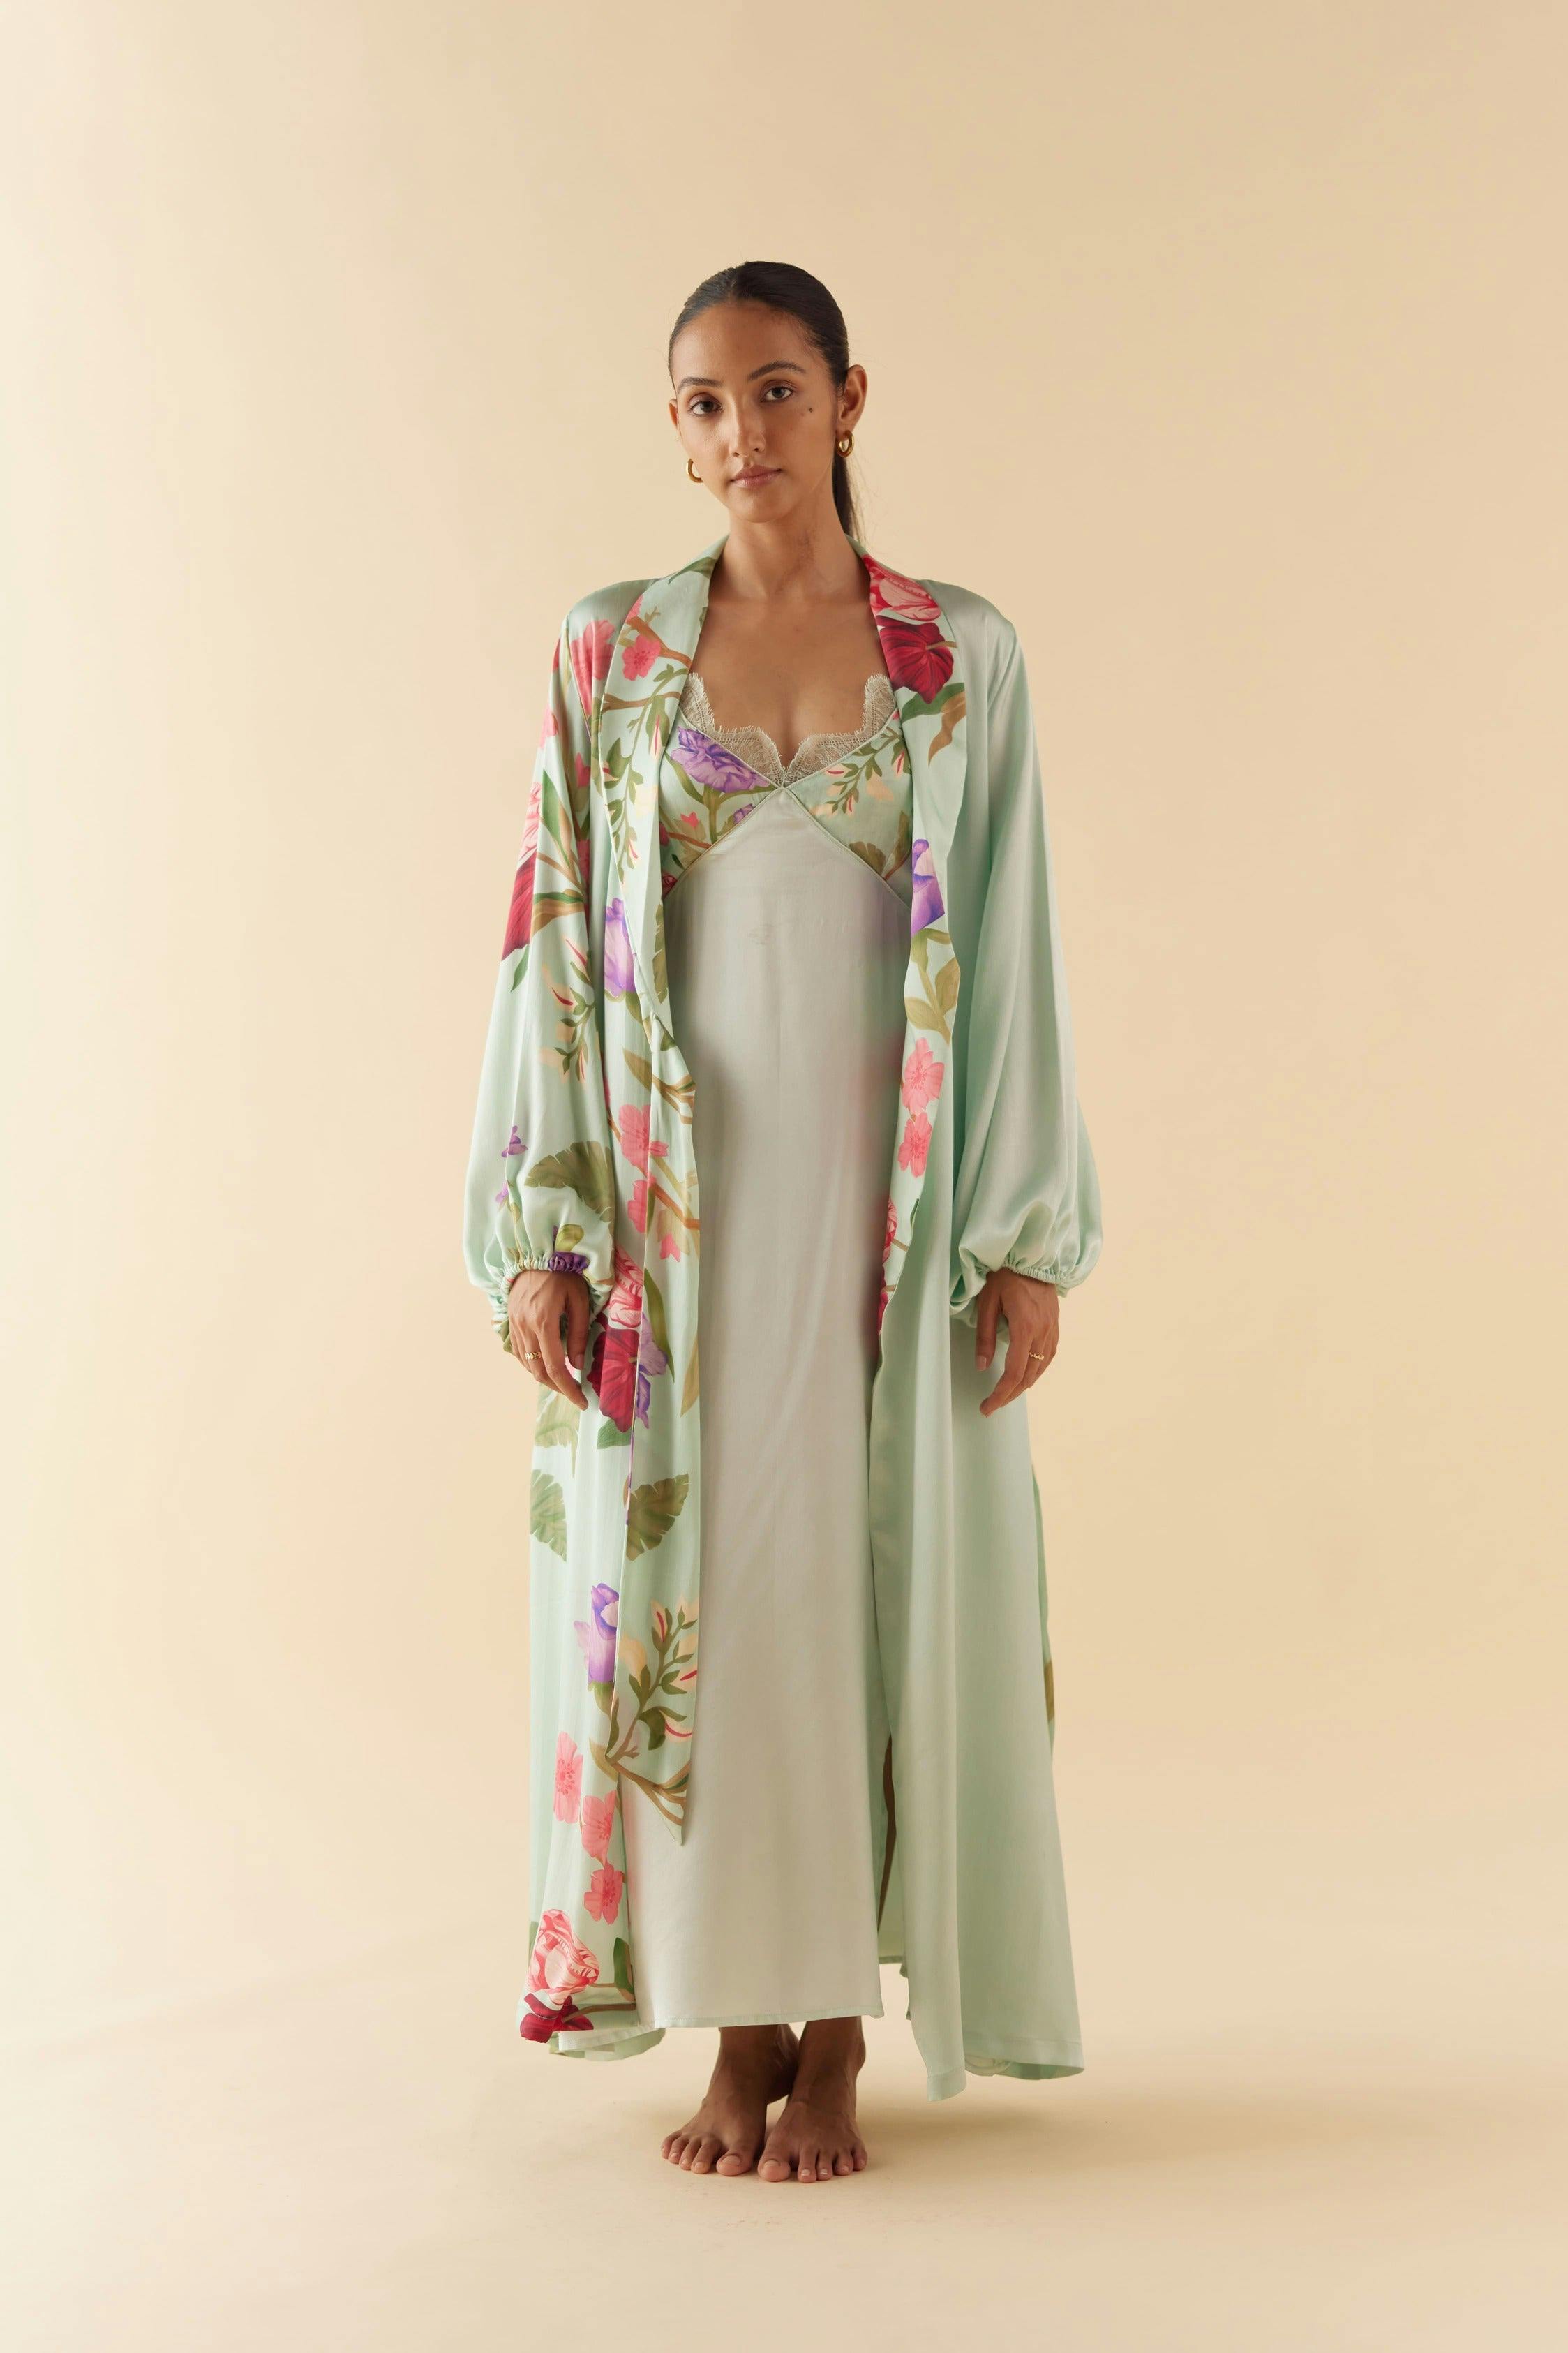 Thumbnail preview #0 for Celeste Floral Dream Silk Robe & Slip Set - Full Length